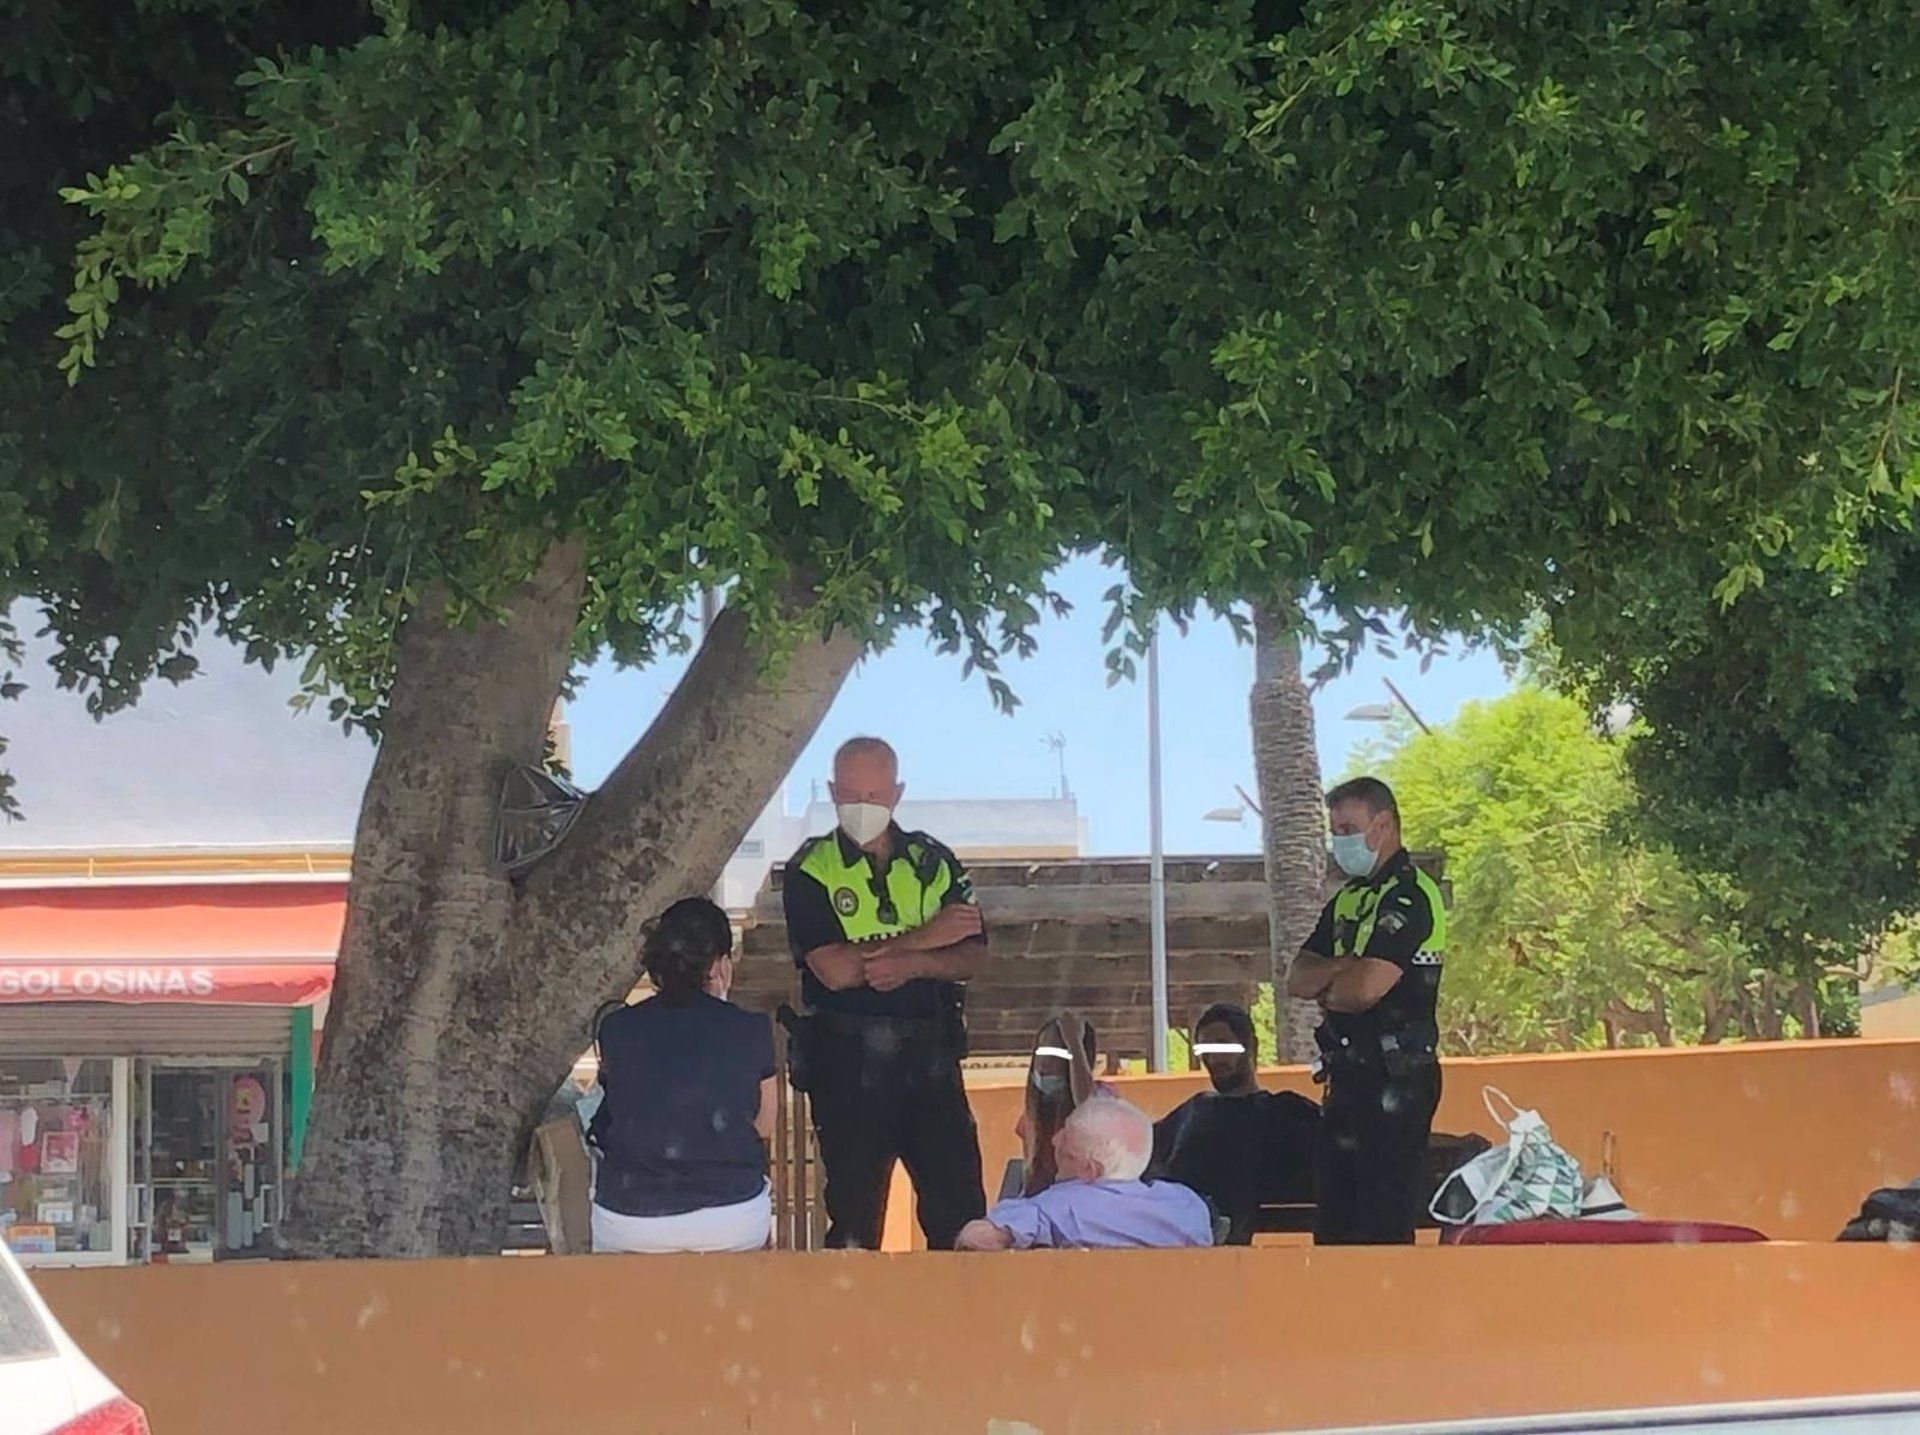 La Policía Local de Alcalá de Gaudaíra en el 'bulevar' de la localidad, donde ha acampado el sintecho